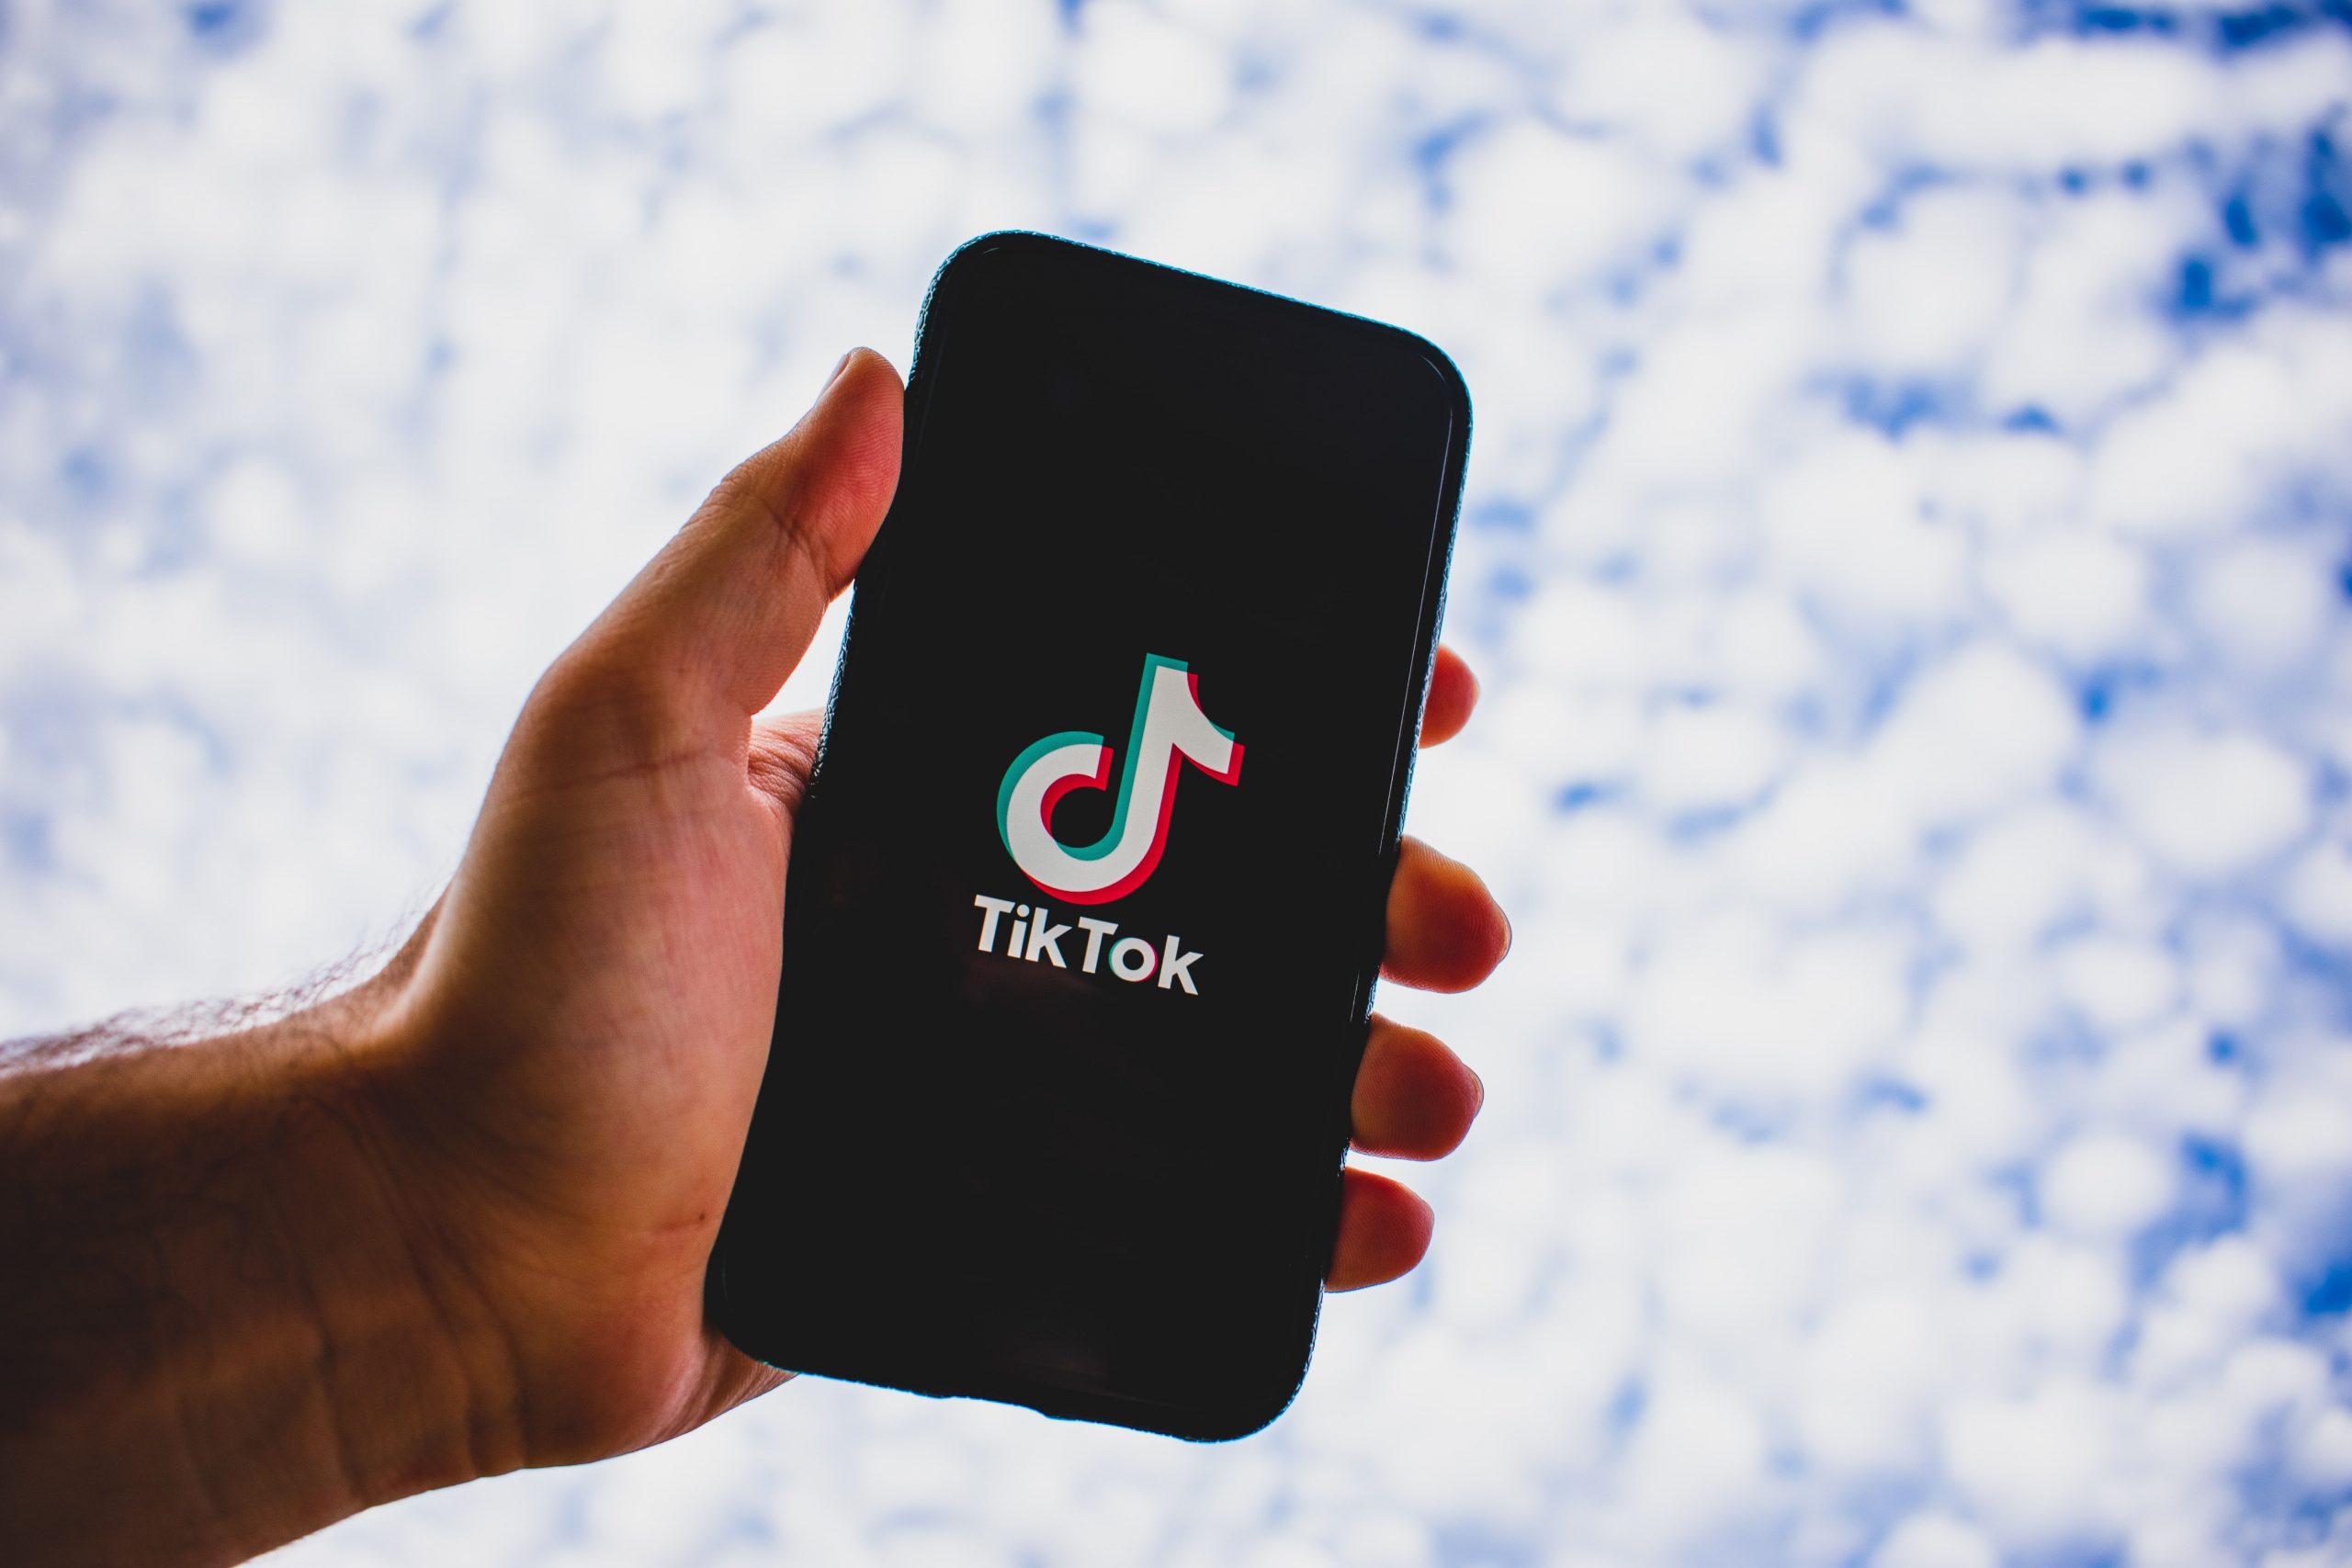 भारत में कारोबार बंद करेगी TikTok, कर्मचारियों को भेजा गया ईमेल